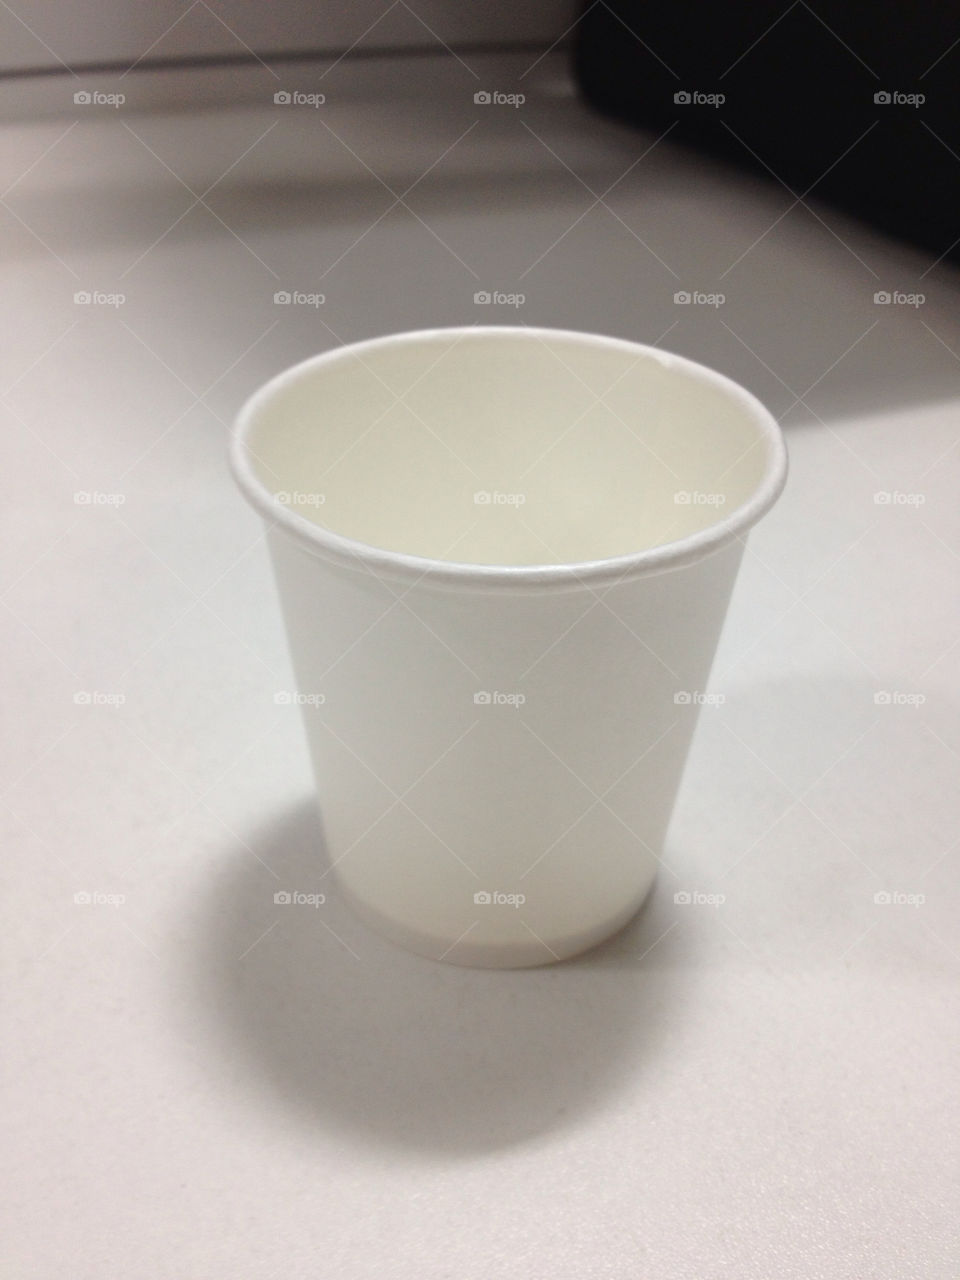 desk object tea cup empty cup by kunaldaca